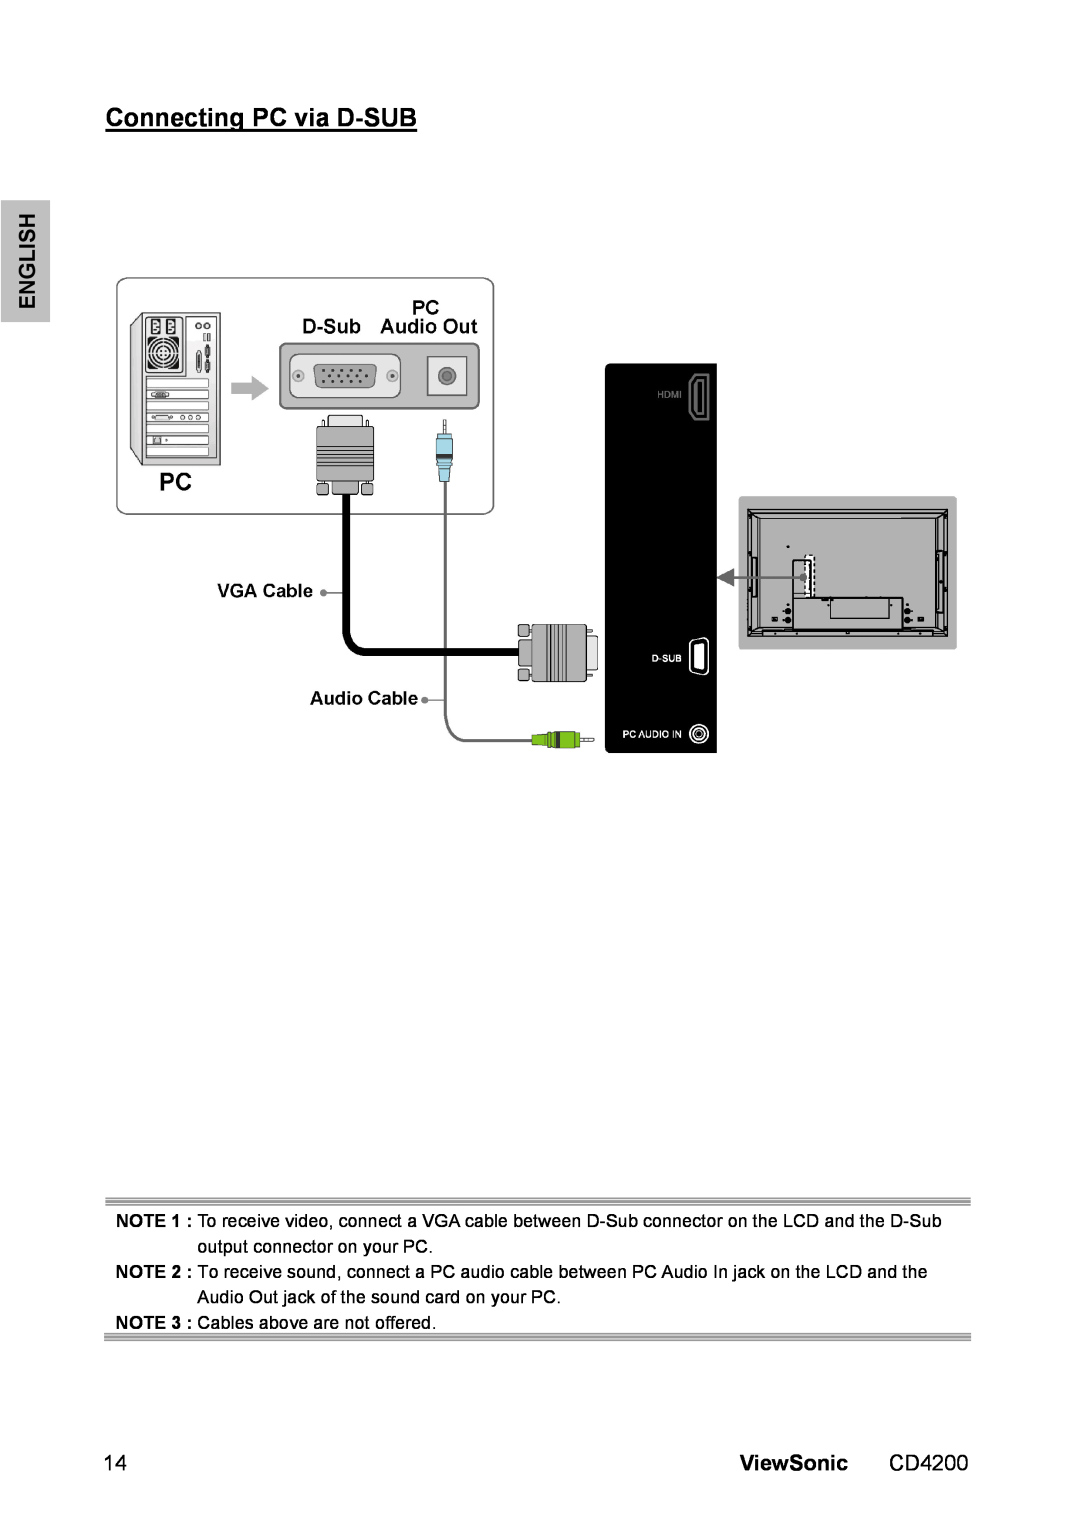 ViewSonic CD4200 manual Connecting PC via D-SUB, English, ViewSonic 